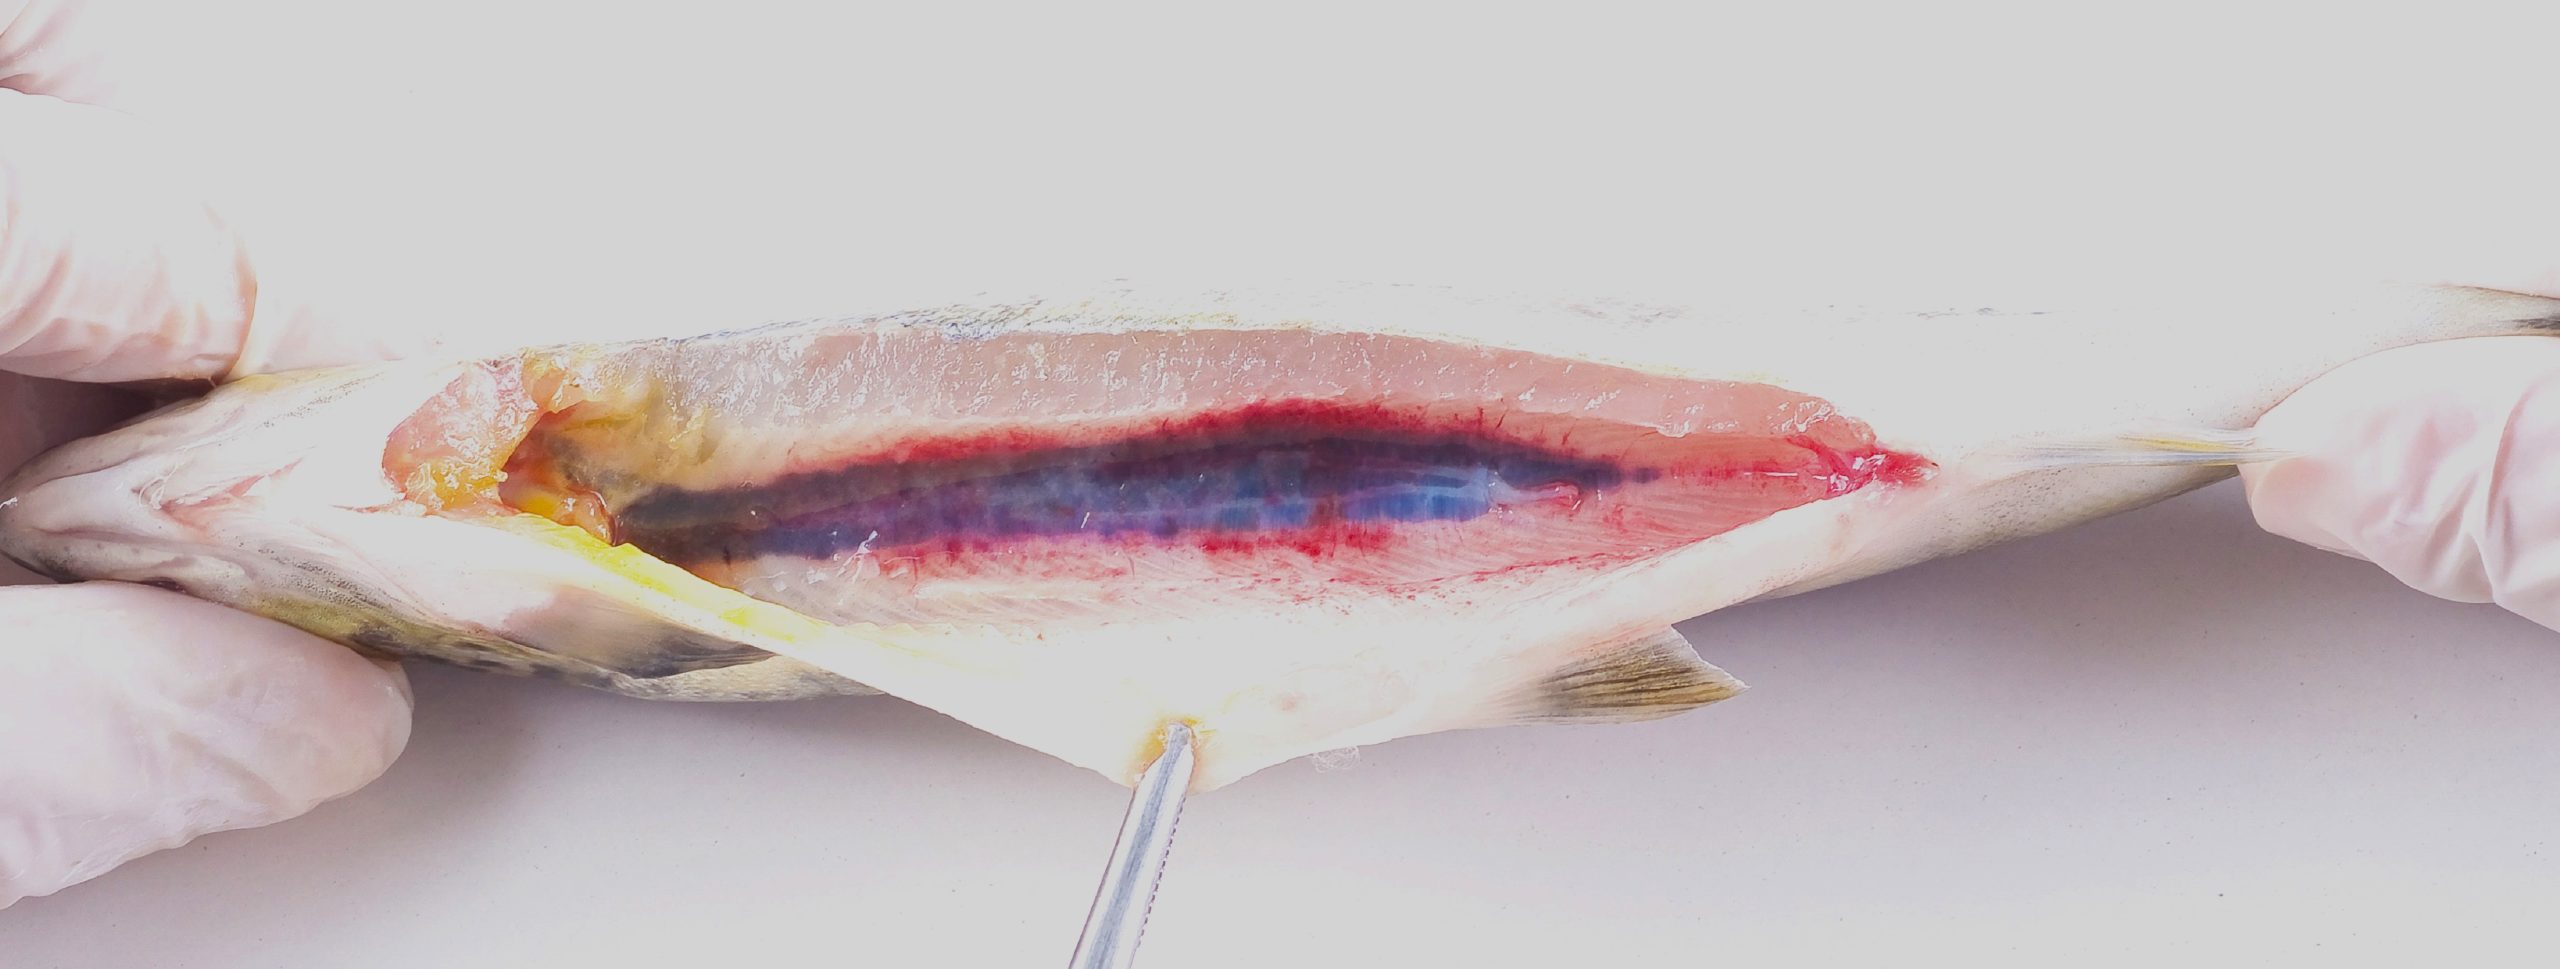 Ciba alerta por reaparición de furunculosis atípica en salmón del Atlántico